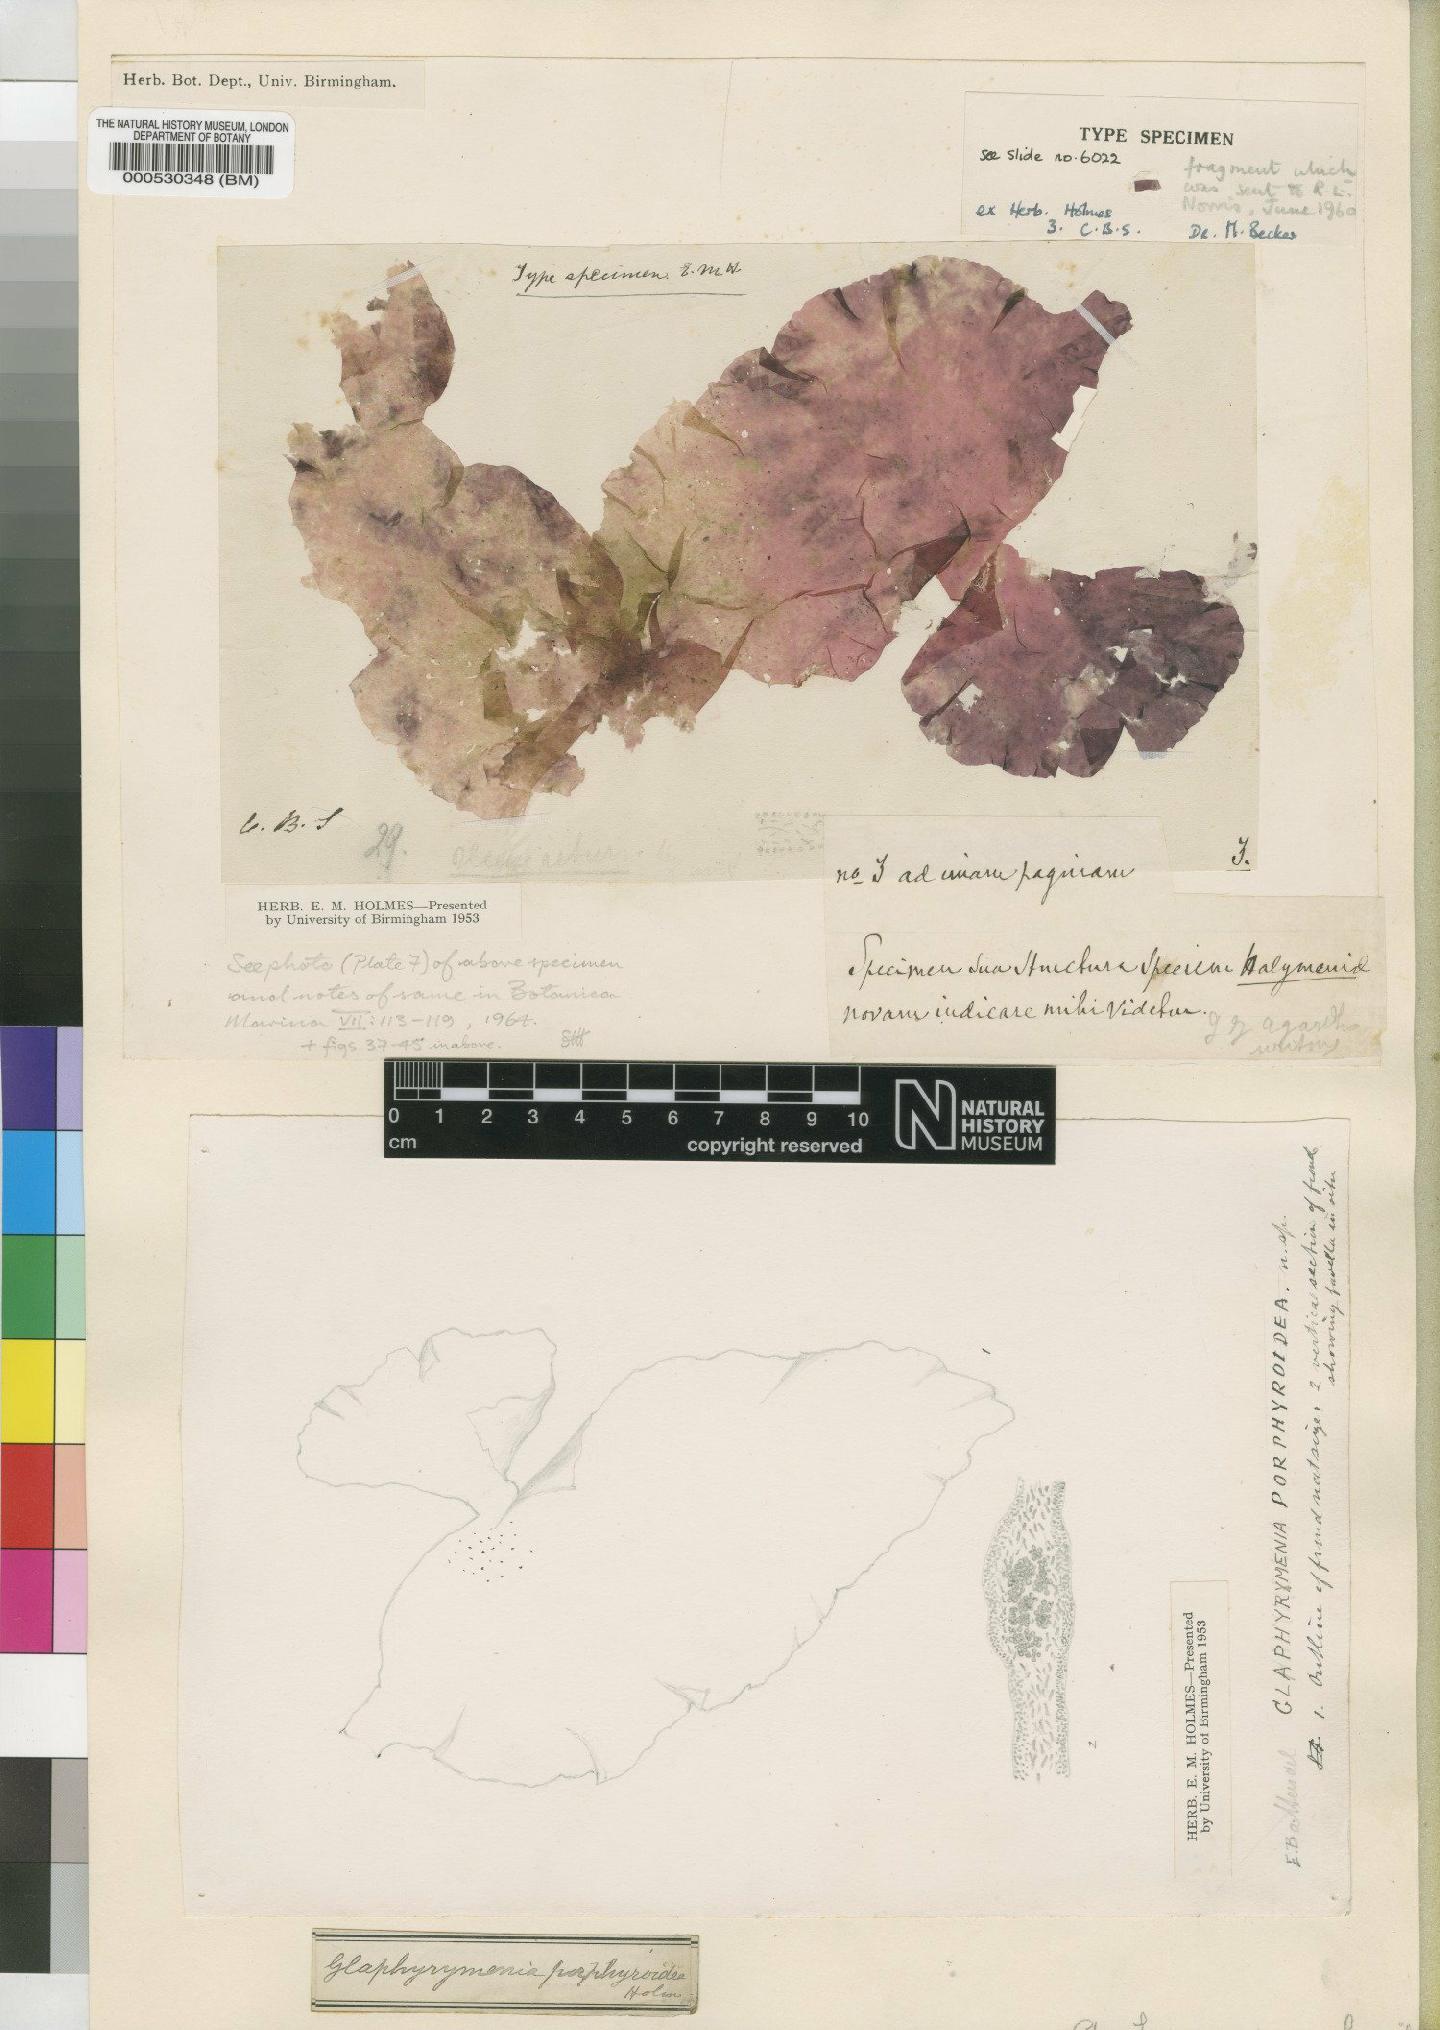 To NHMUK collection (Pugetia porphyroidea (F.Schmitz ex Holmes) Norris; Holotype; NHMUK:ecatalogue:4858626)